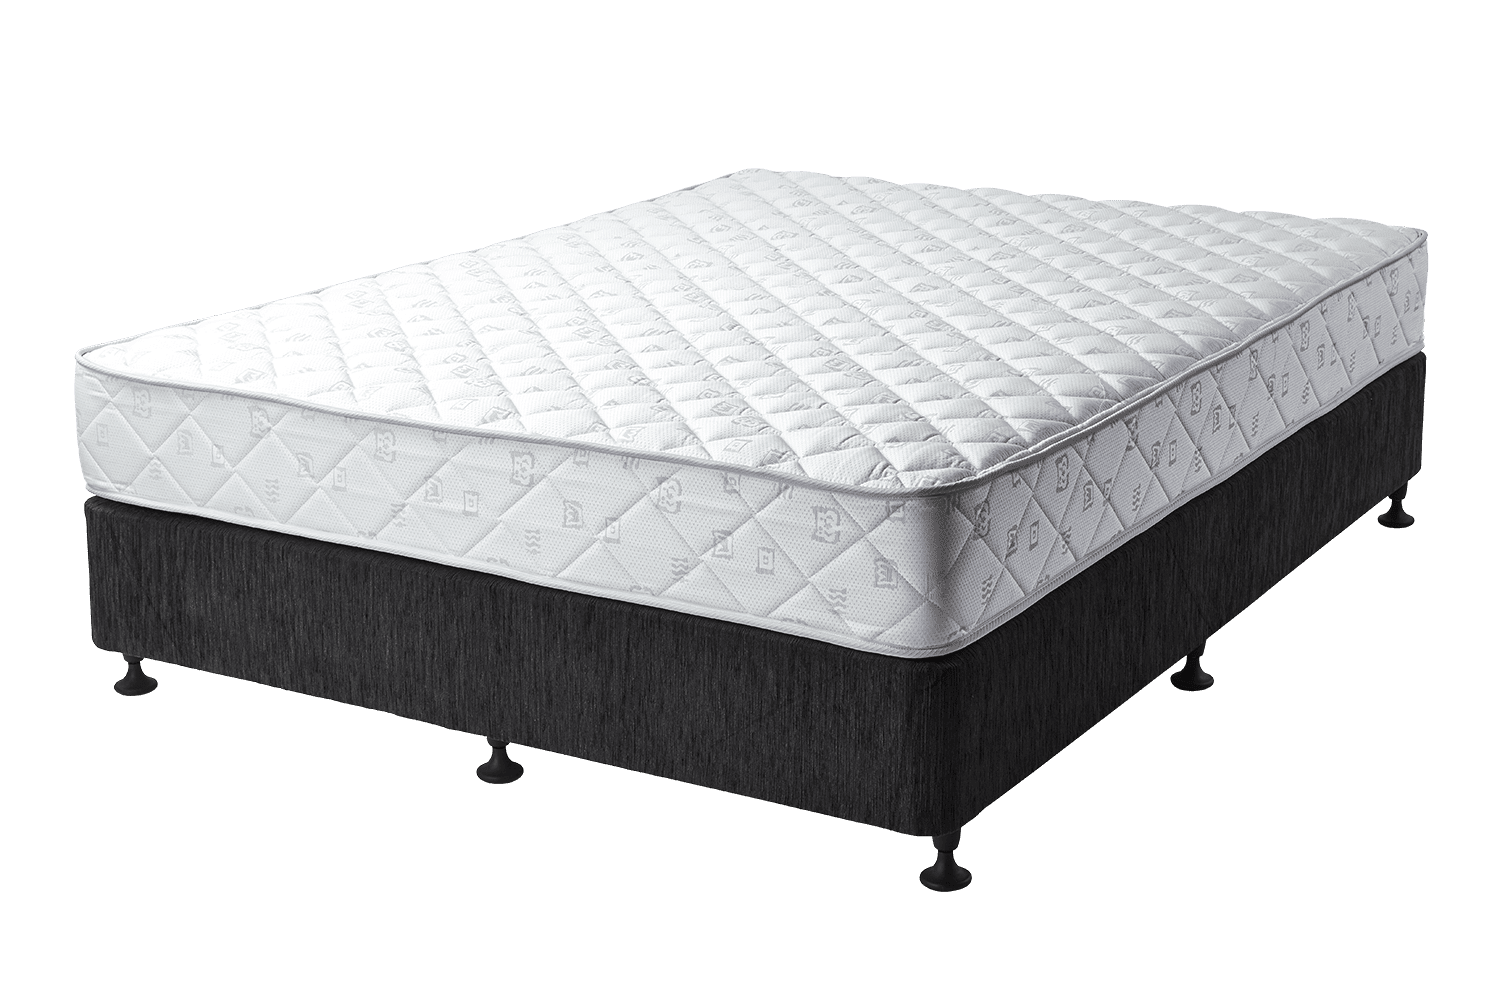 mattresses for sale aberdeen